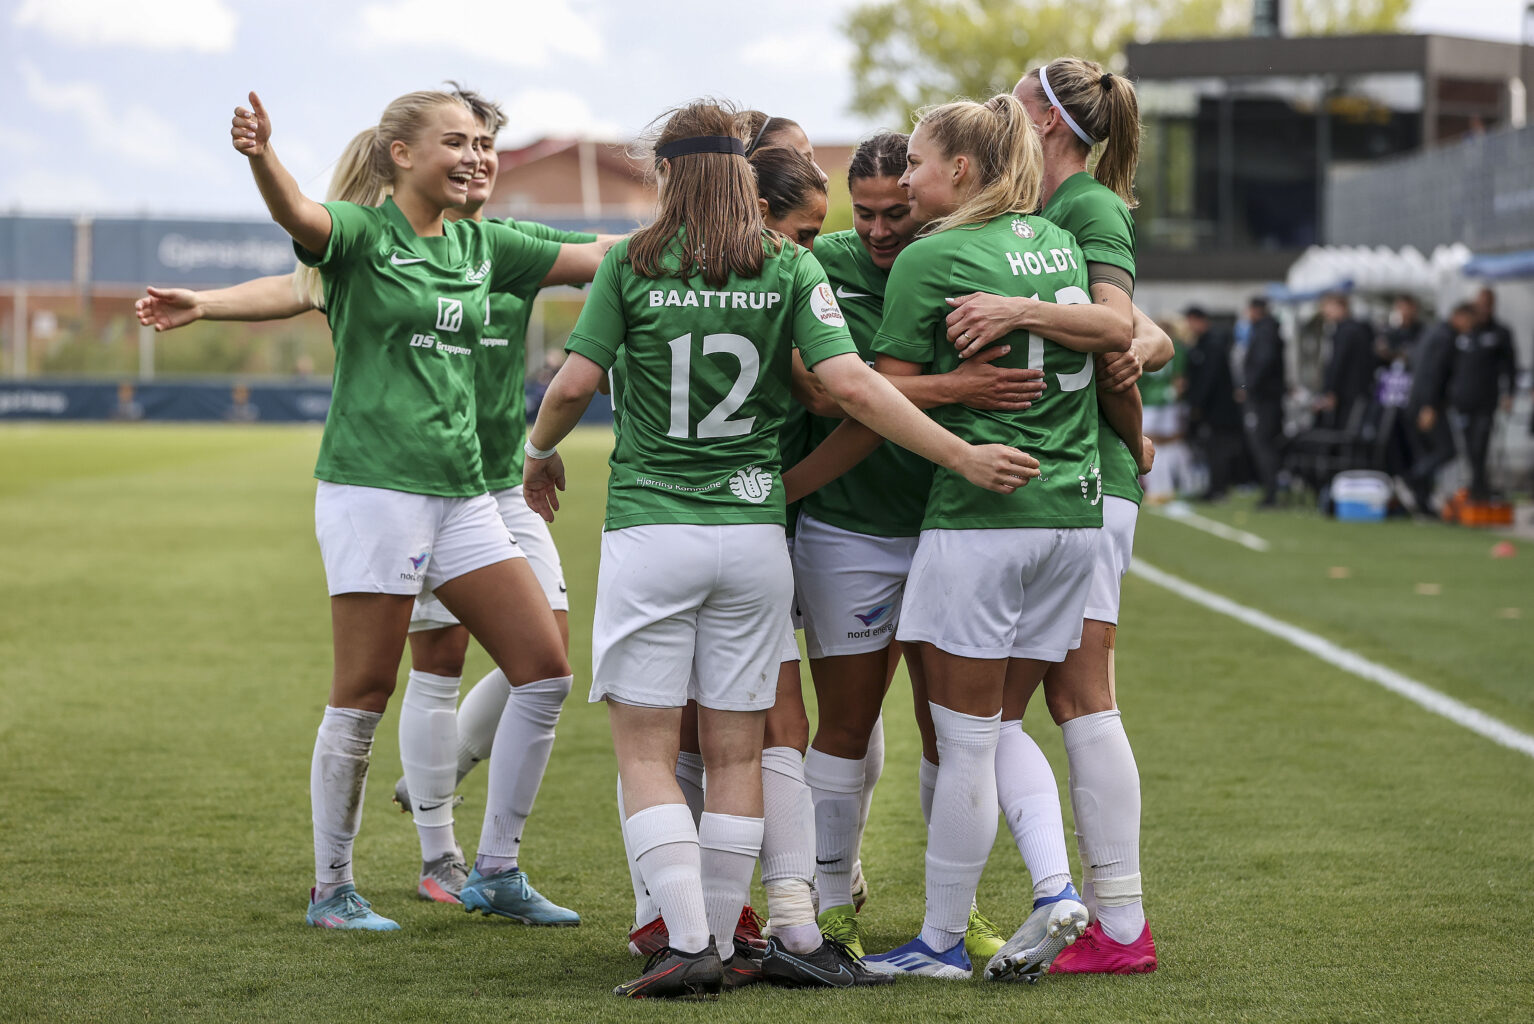 Når Aalborg til sommer igen er vært for DM-ugen bliver kvindernes pokalfinale i fodbold en del af sportsugen. Pokalfinalen står mellem Fortuna Hjørring og FC Nordsjælland på Aalborg Portland Park.